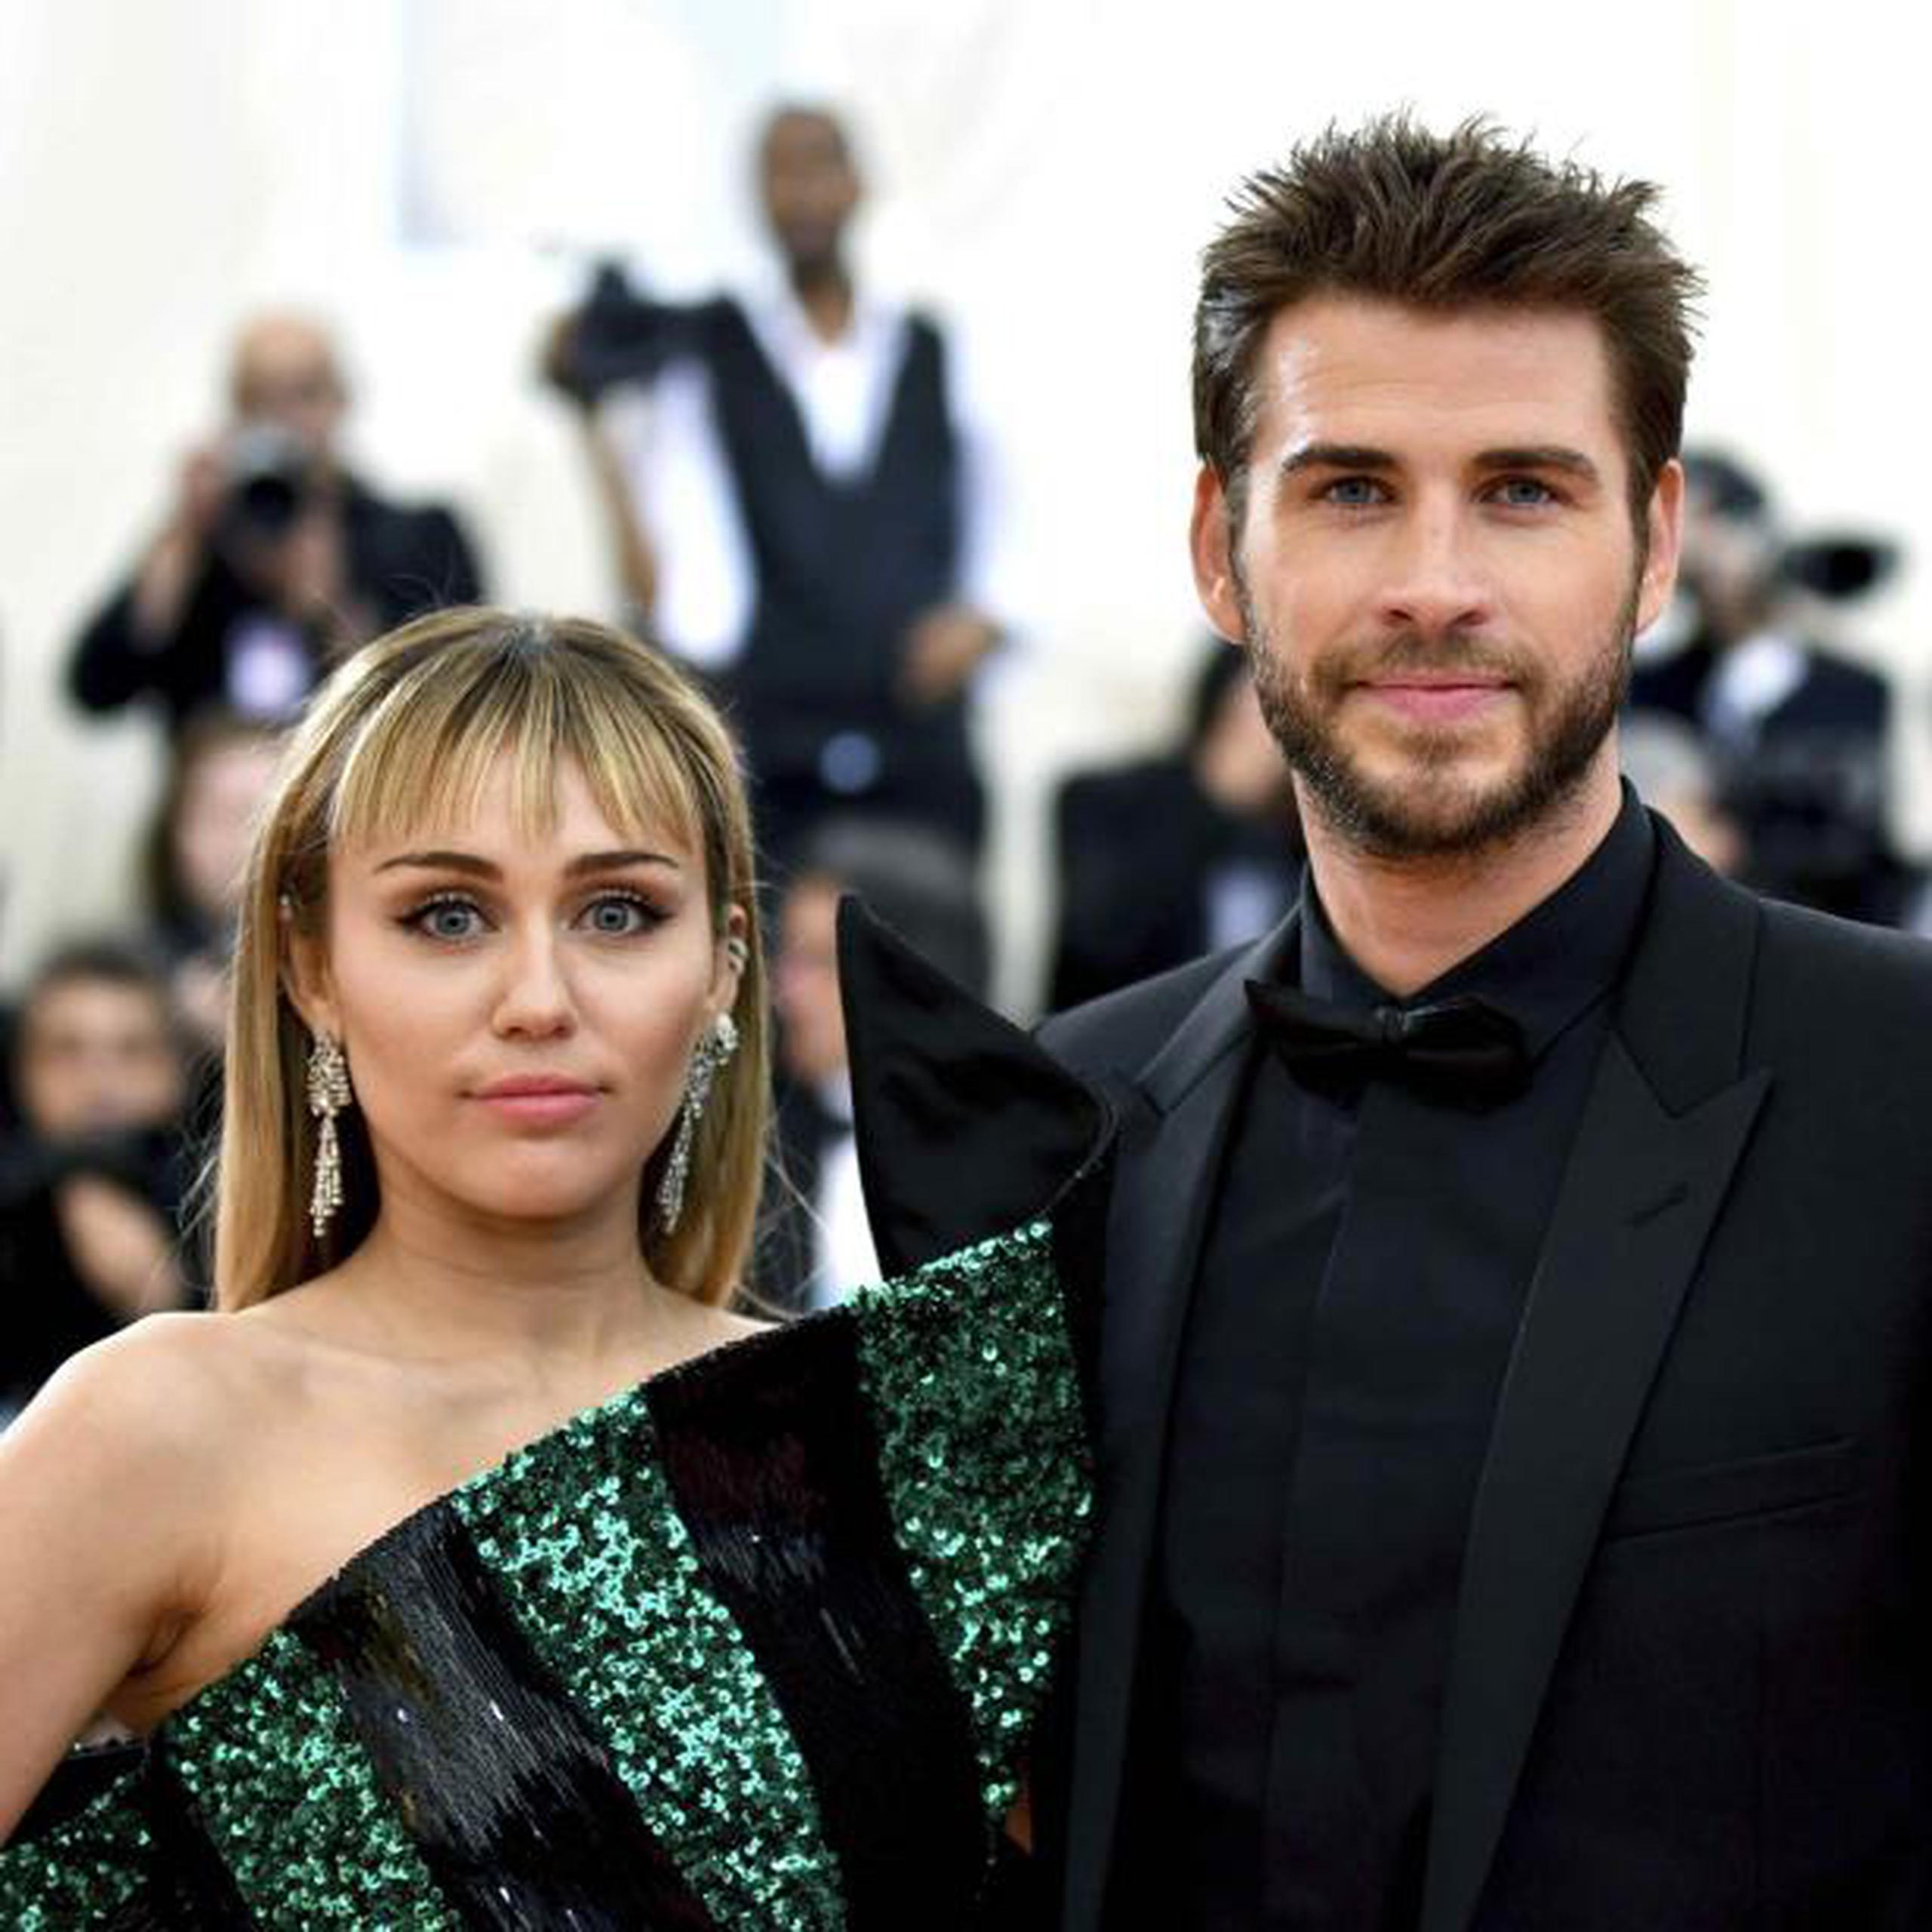 Miley Cyrus y Liam Hemsworth se casaron el 23 de diciembre de 2018 tras 10 años de relación. (Charles Sykes / Invision / AP)